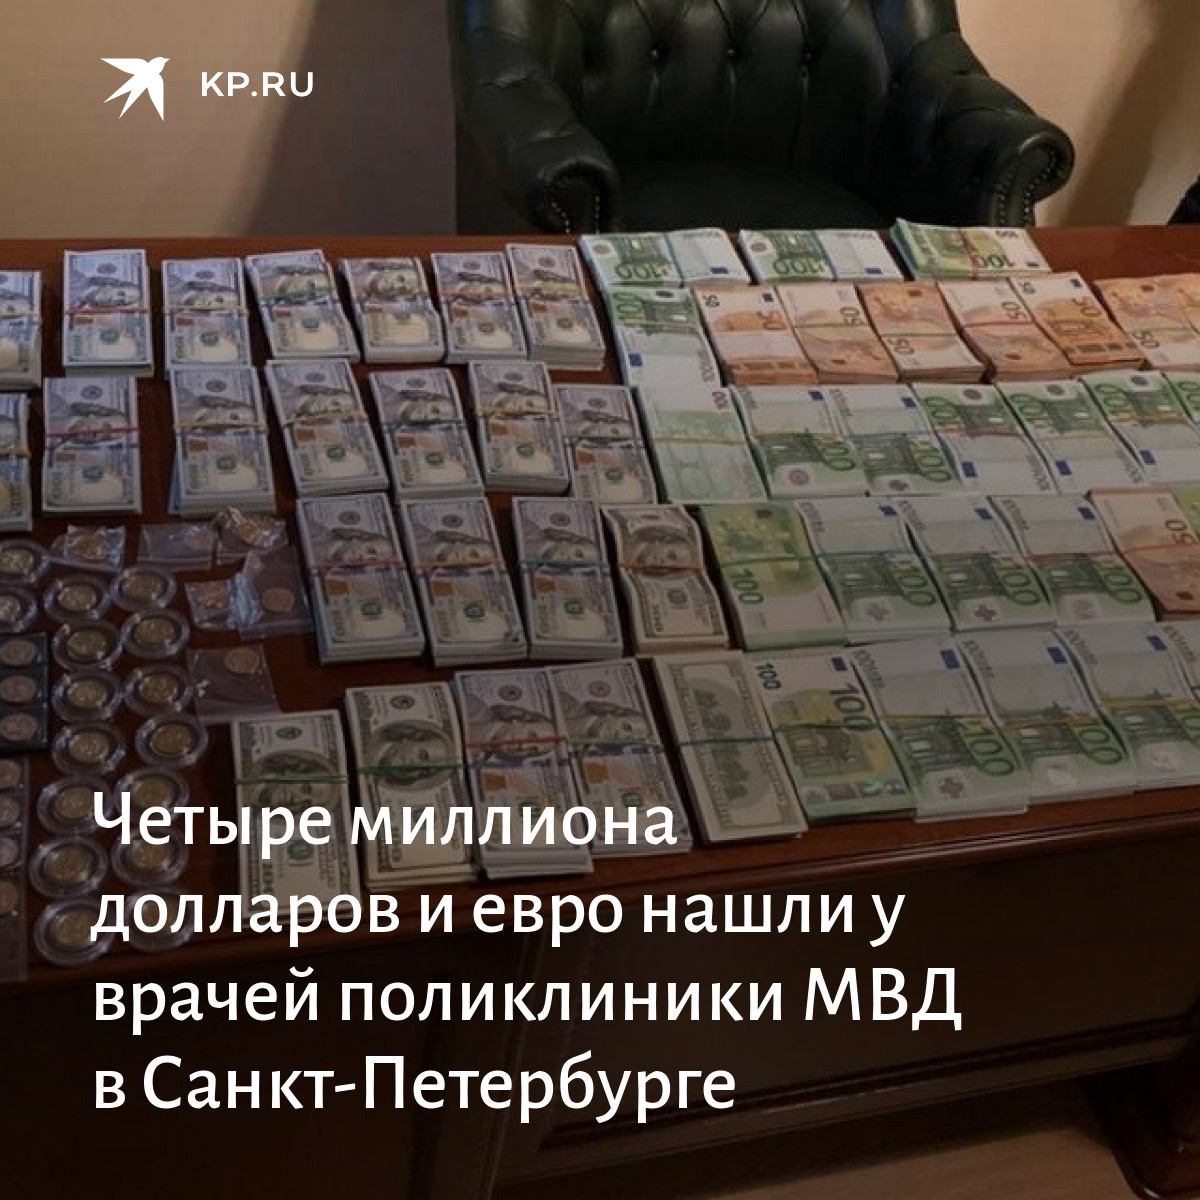 Кредит на 1000000 рублей. Кредит на 1000000 миллионов долларов. 1000000 Рублей на открытие бизнеса. Кредит 1000000 рублей наличными. Как получить миллион.